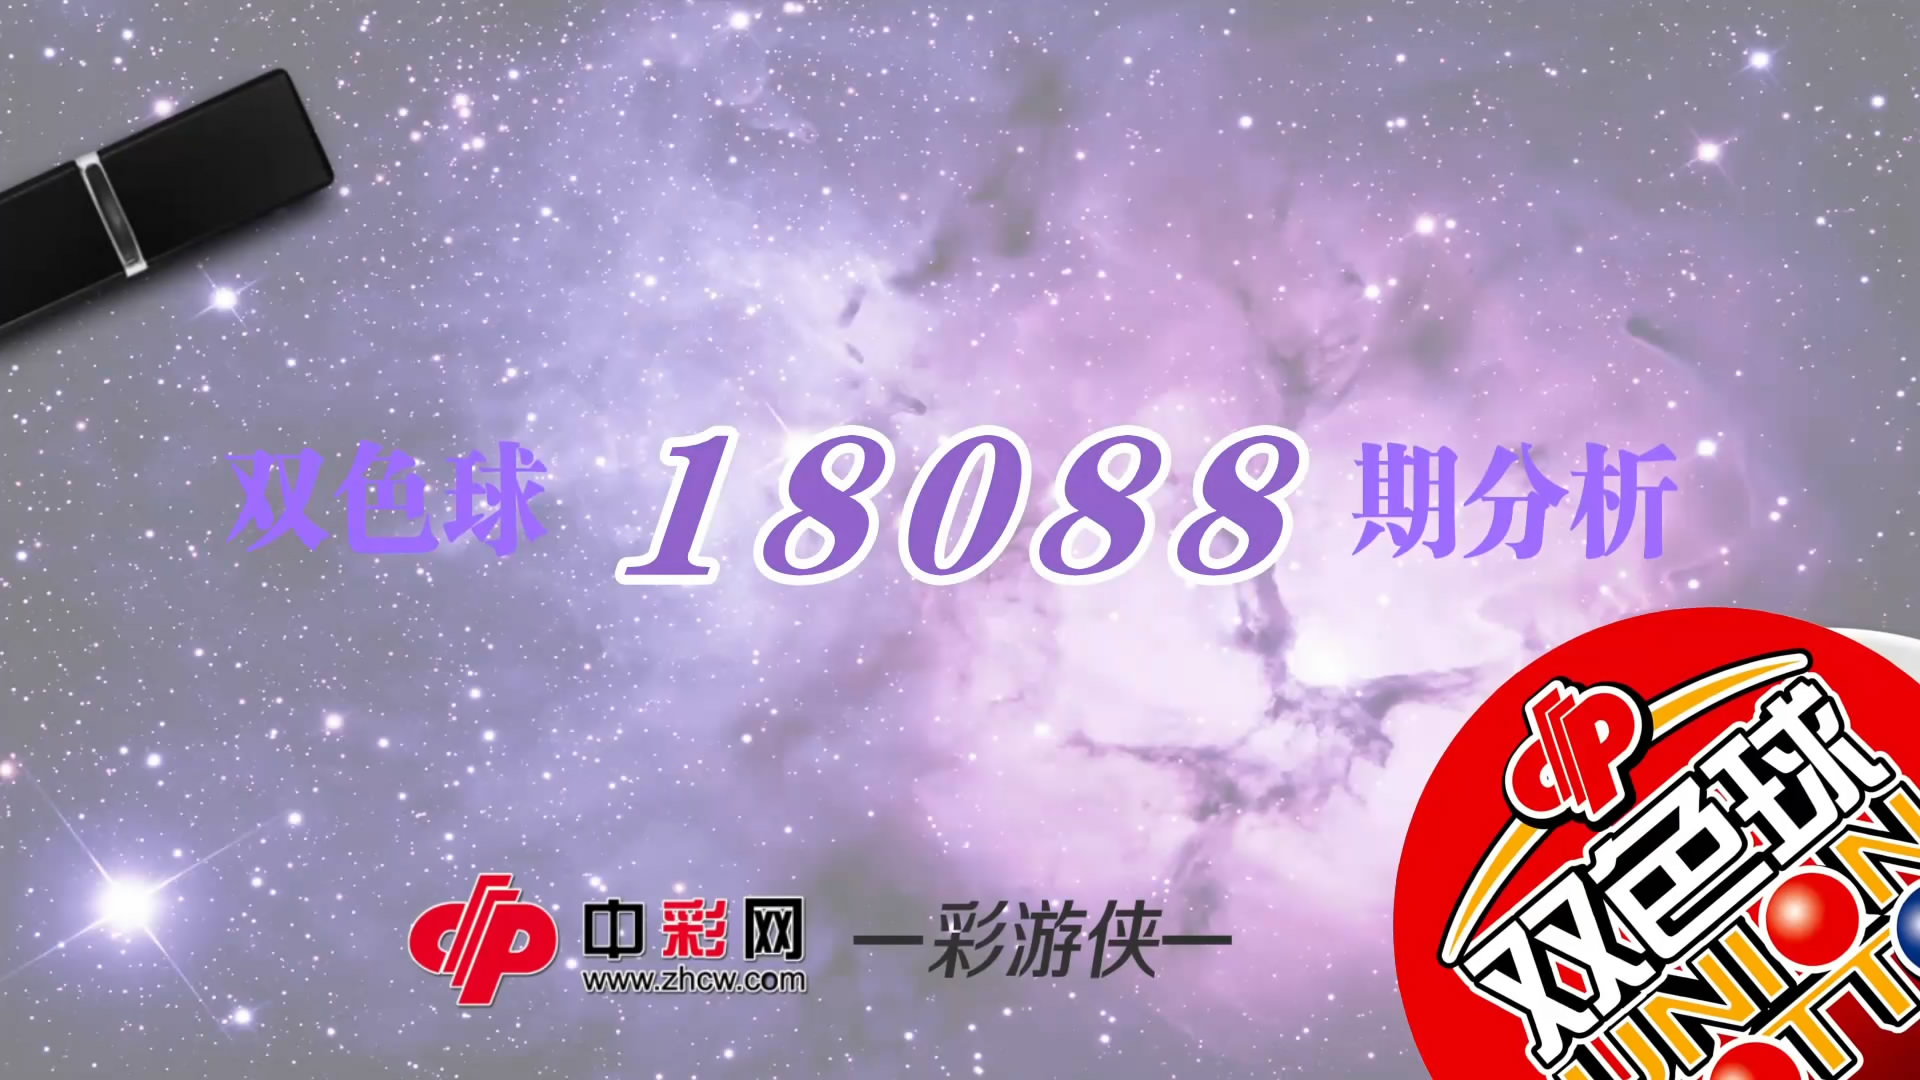 【中彩视频】彩游侠双色球第18088期